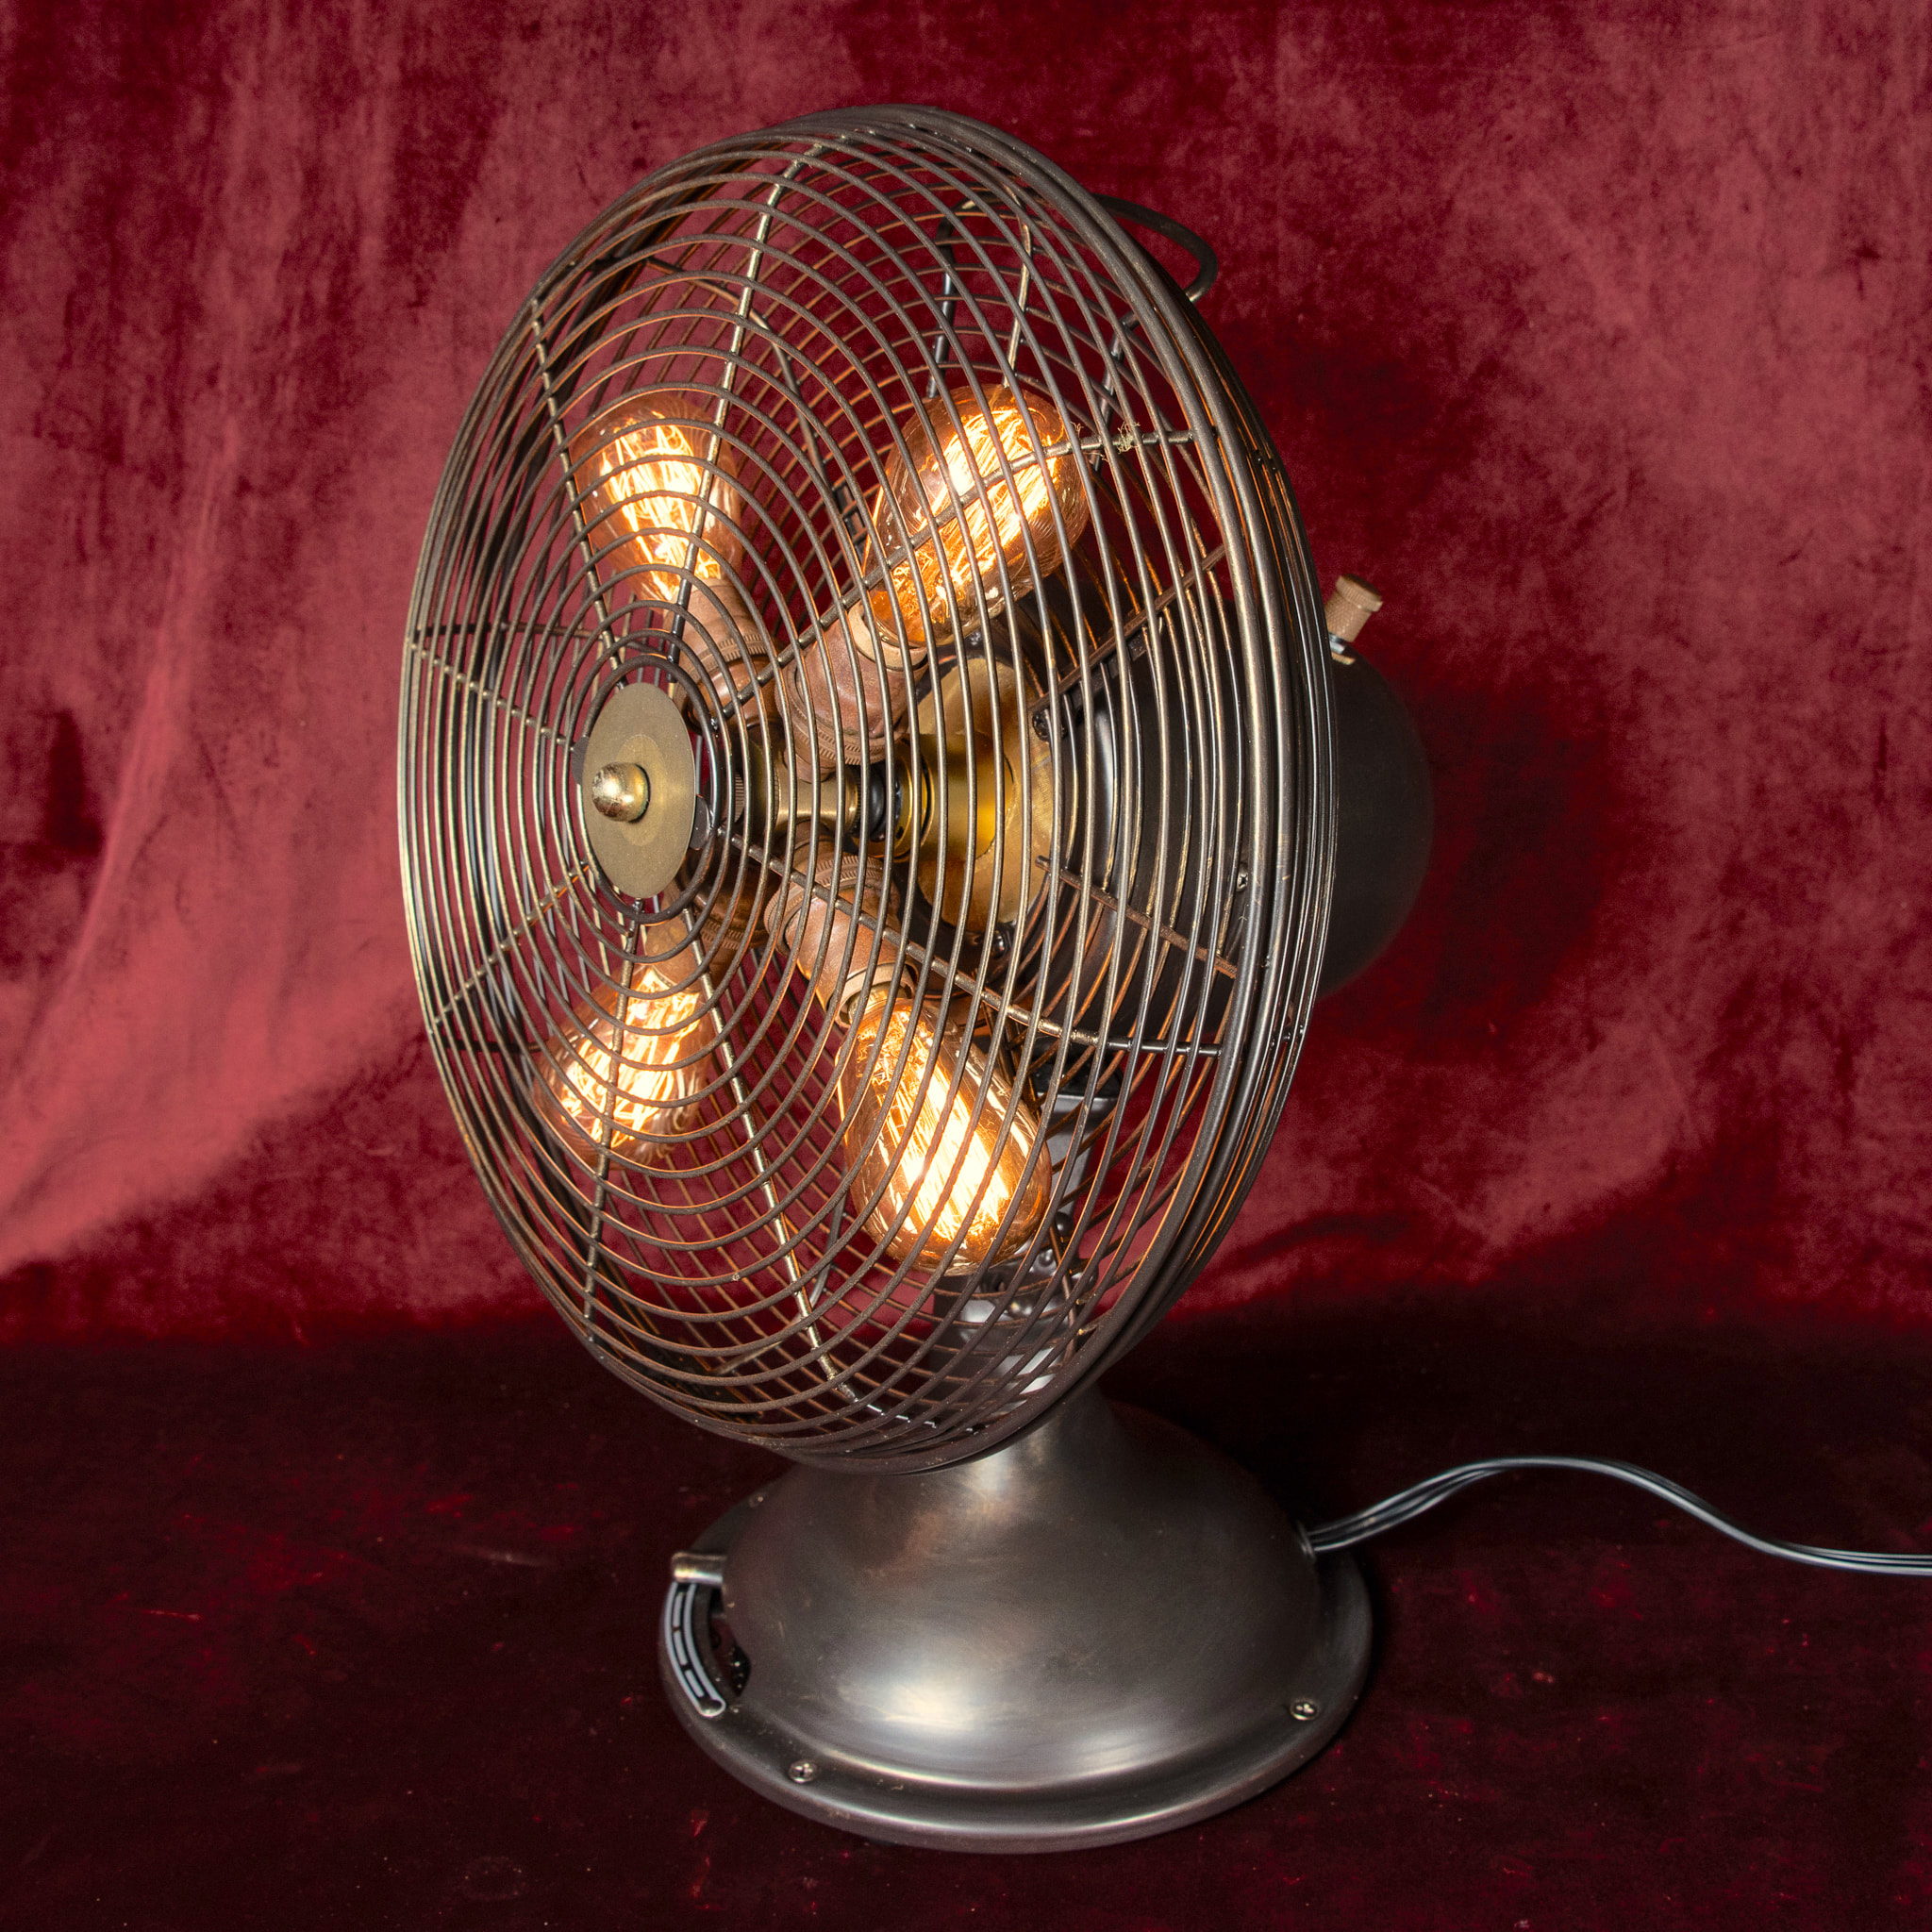 The Illuminated Rotating Fan Light